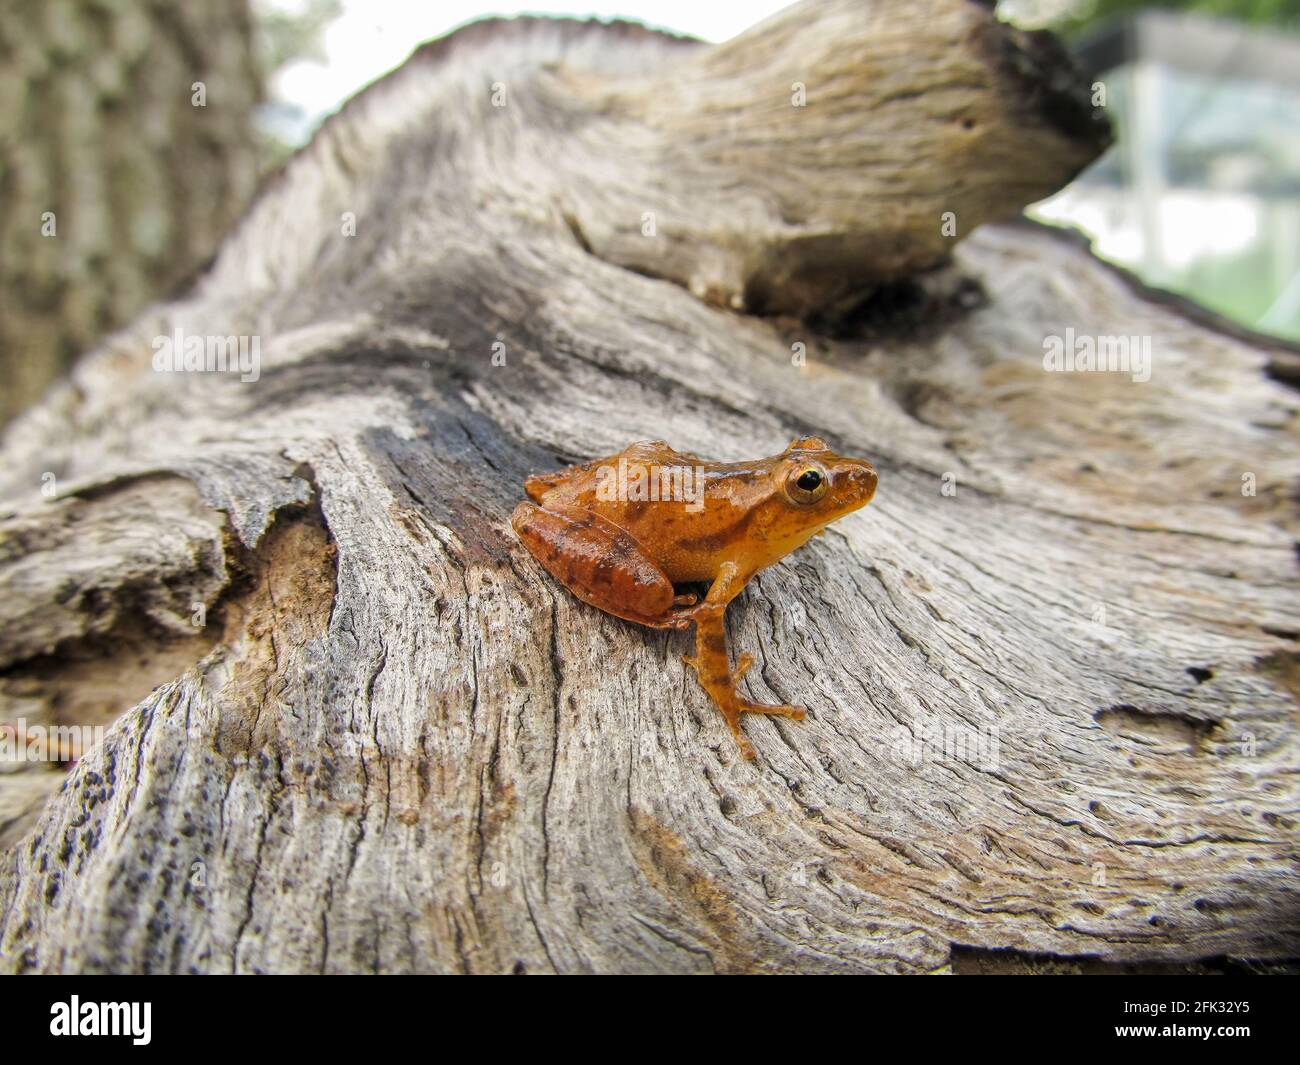 Peeper de primavera del sur (Pseudacris crucifer) Rana coros, posada sobre un trozo de madera de deriva, vista de perfil lateral Foto de stock